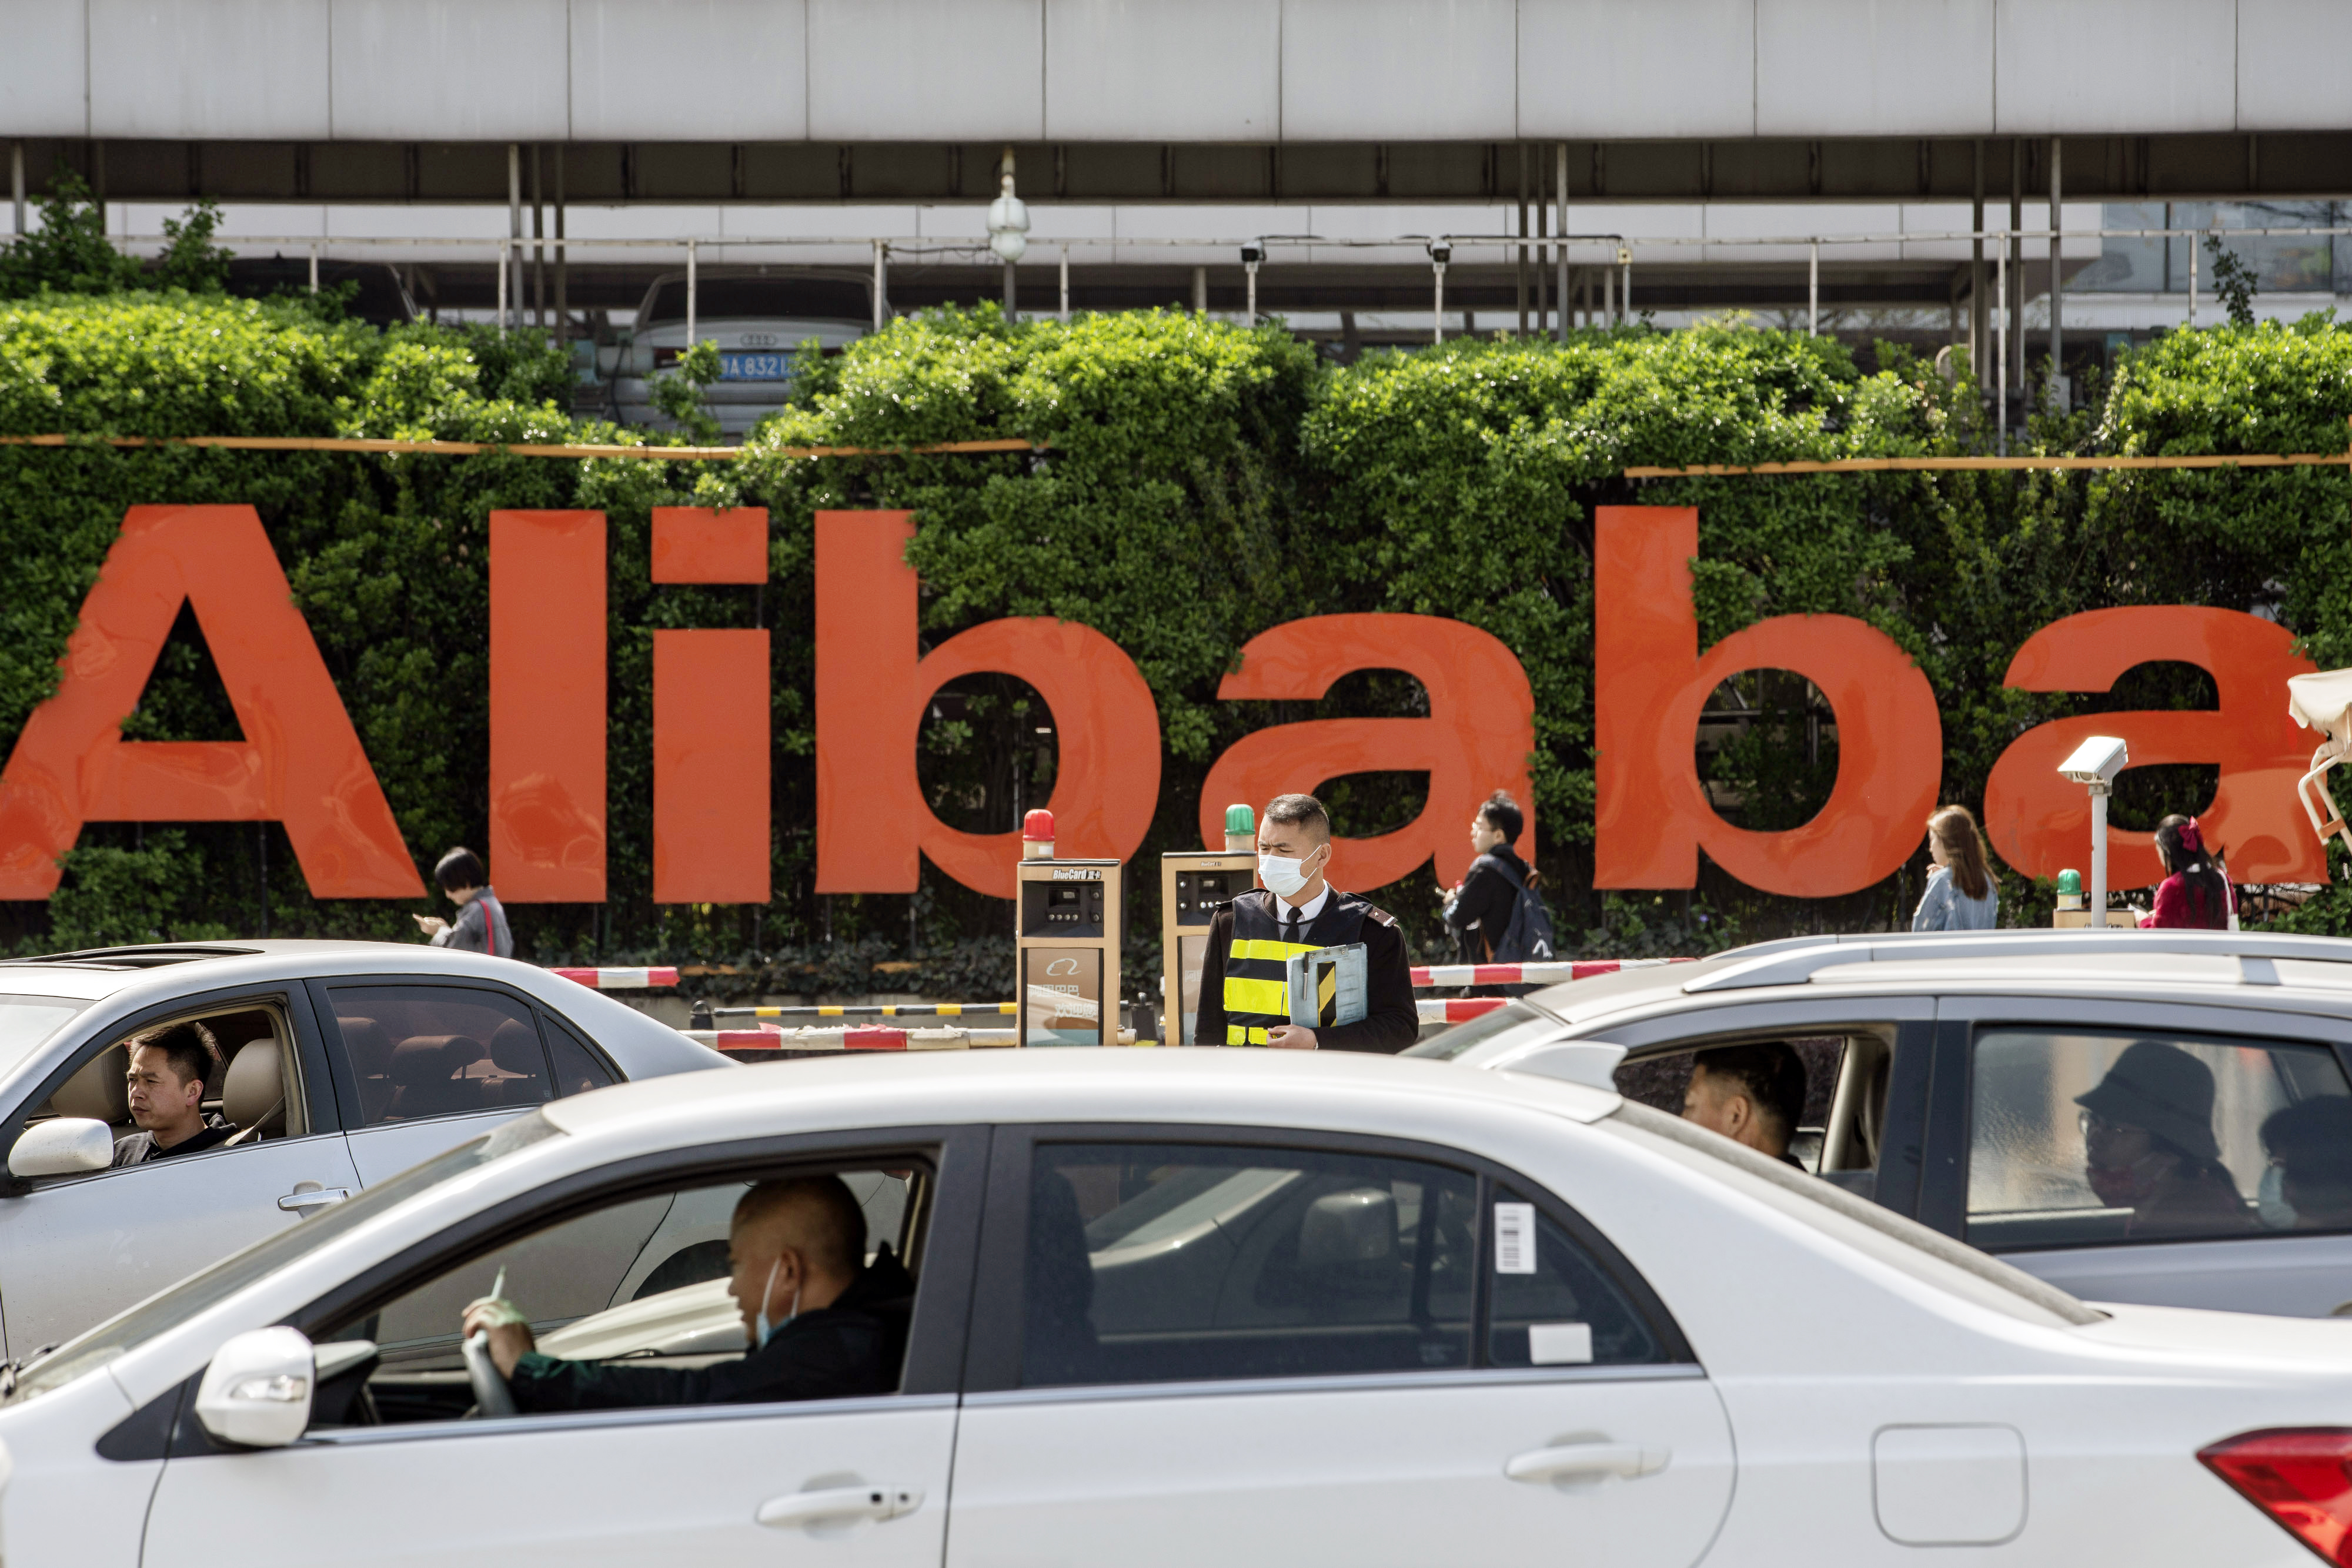 Alibaba undergoes major management reshuffle